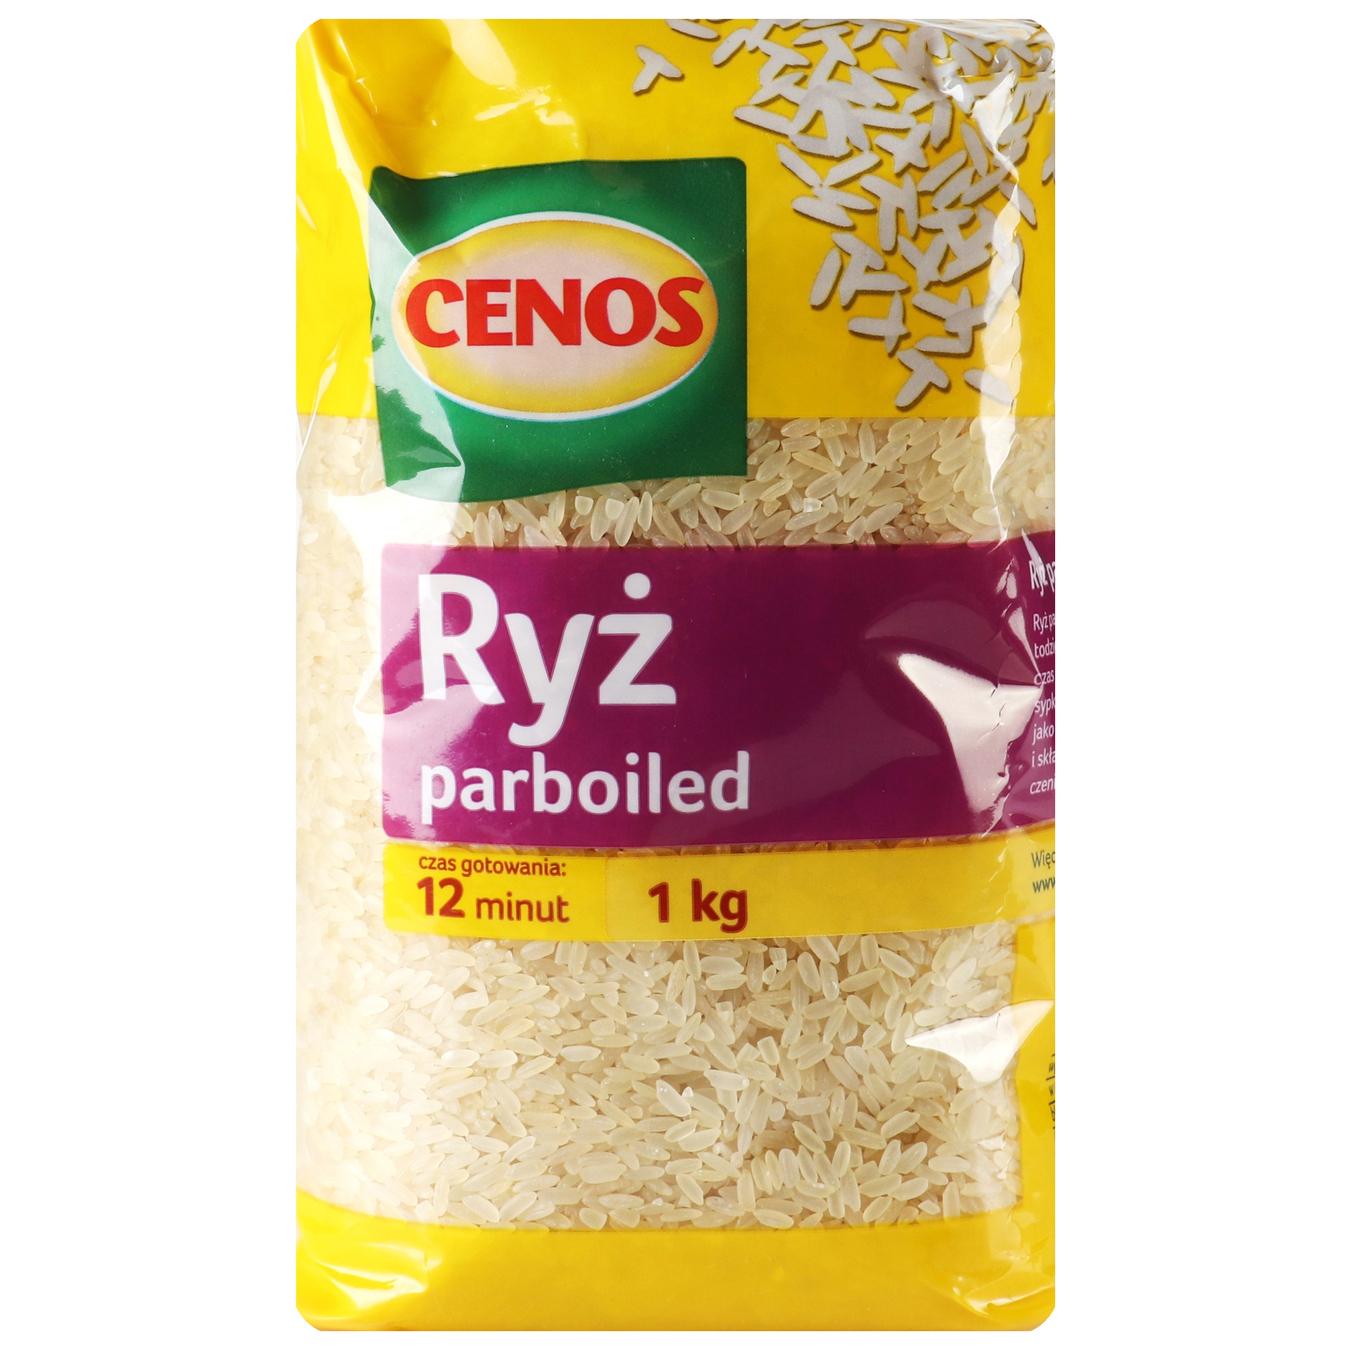 Cenos steamed rice 1 kg